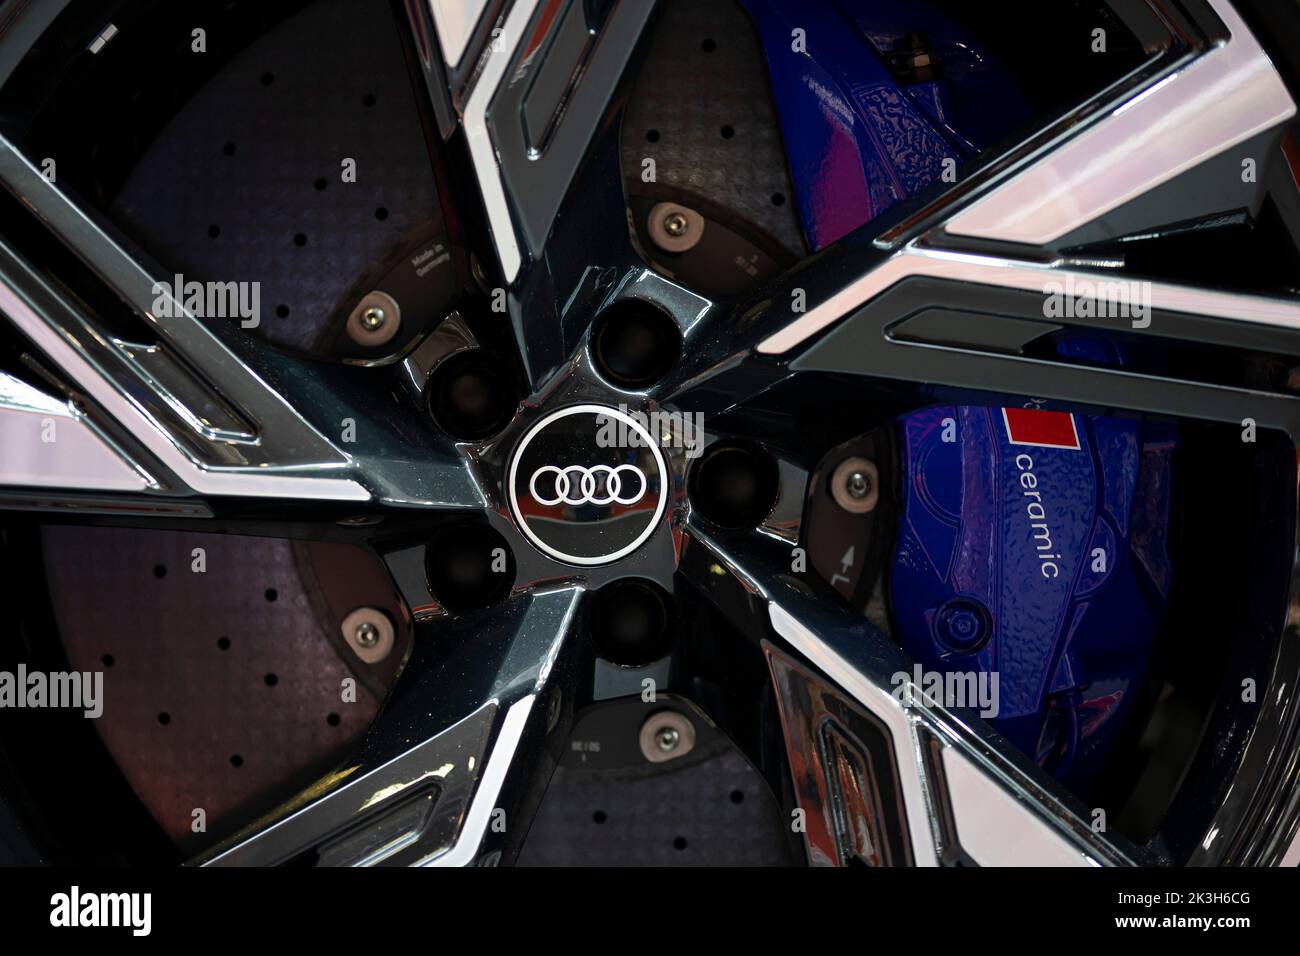 Sofia, Bulgarie - 3 juin 2022 : gros plan du logo Audi est visible sur une roue d'une voiture avec freins en céramique ventilés au salon de l'automobile de Sofia. Banque D'Images